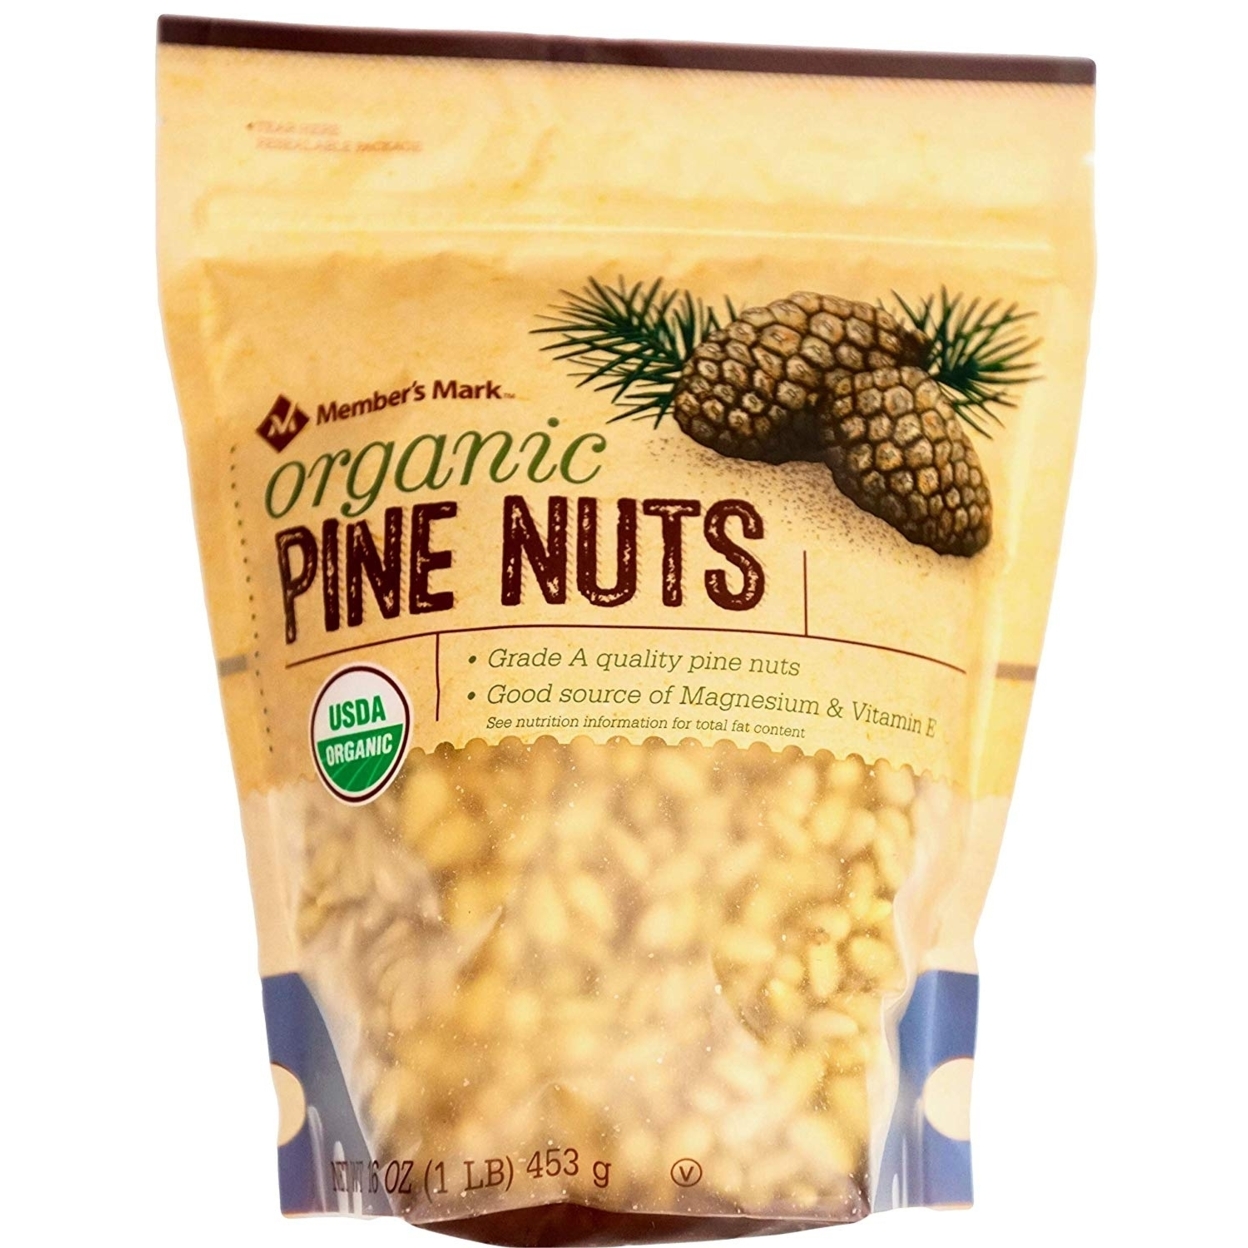 Member's Mark USDA Organic Pine Nuts Grade A, 16 Ounces